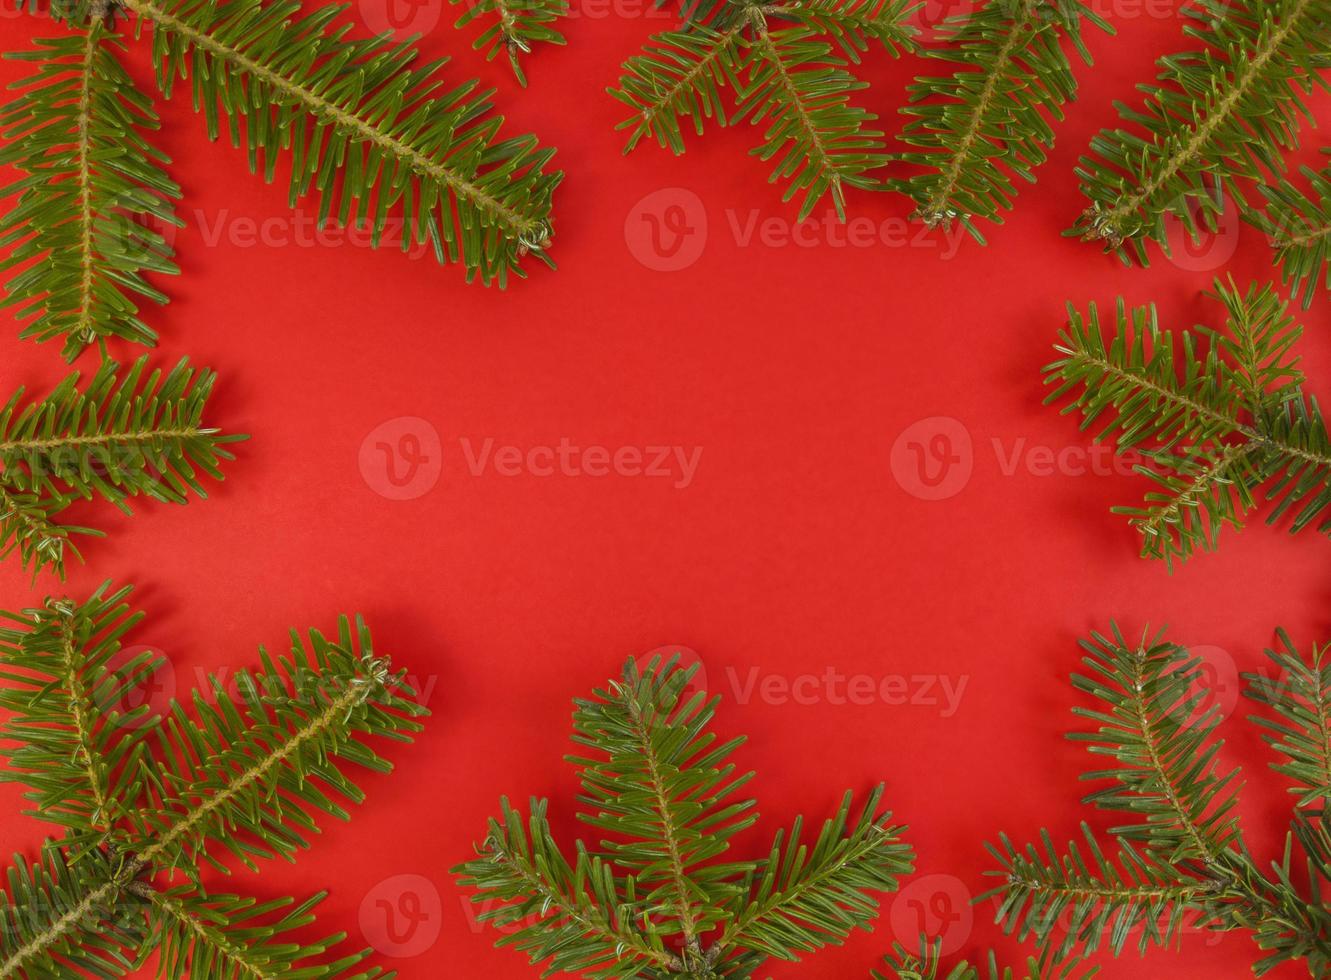 Noël Plat Poser Avec Cadre De Branches De Sapin Sur Fond Rouge Et Copie Espace à Lintérieur Photo